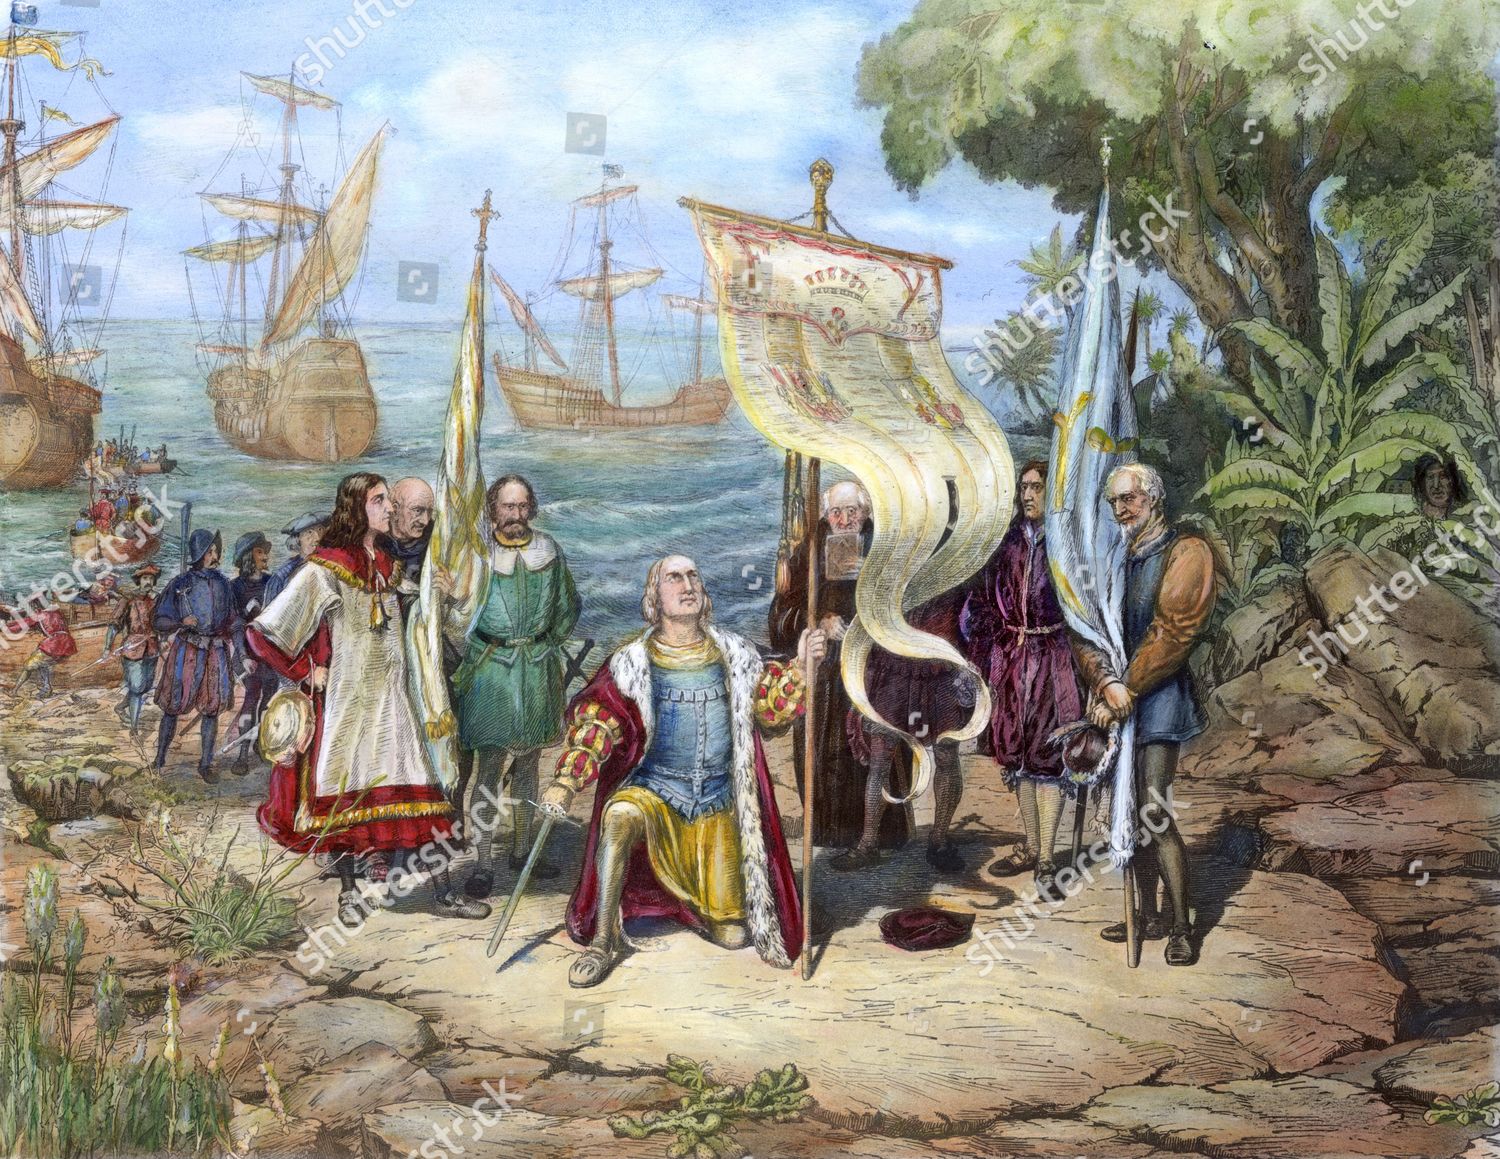 Открытие нового света колумбом. Экспедиция Христофора Колумба достигла острова Сан-Сальвадор.